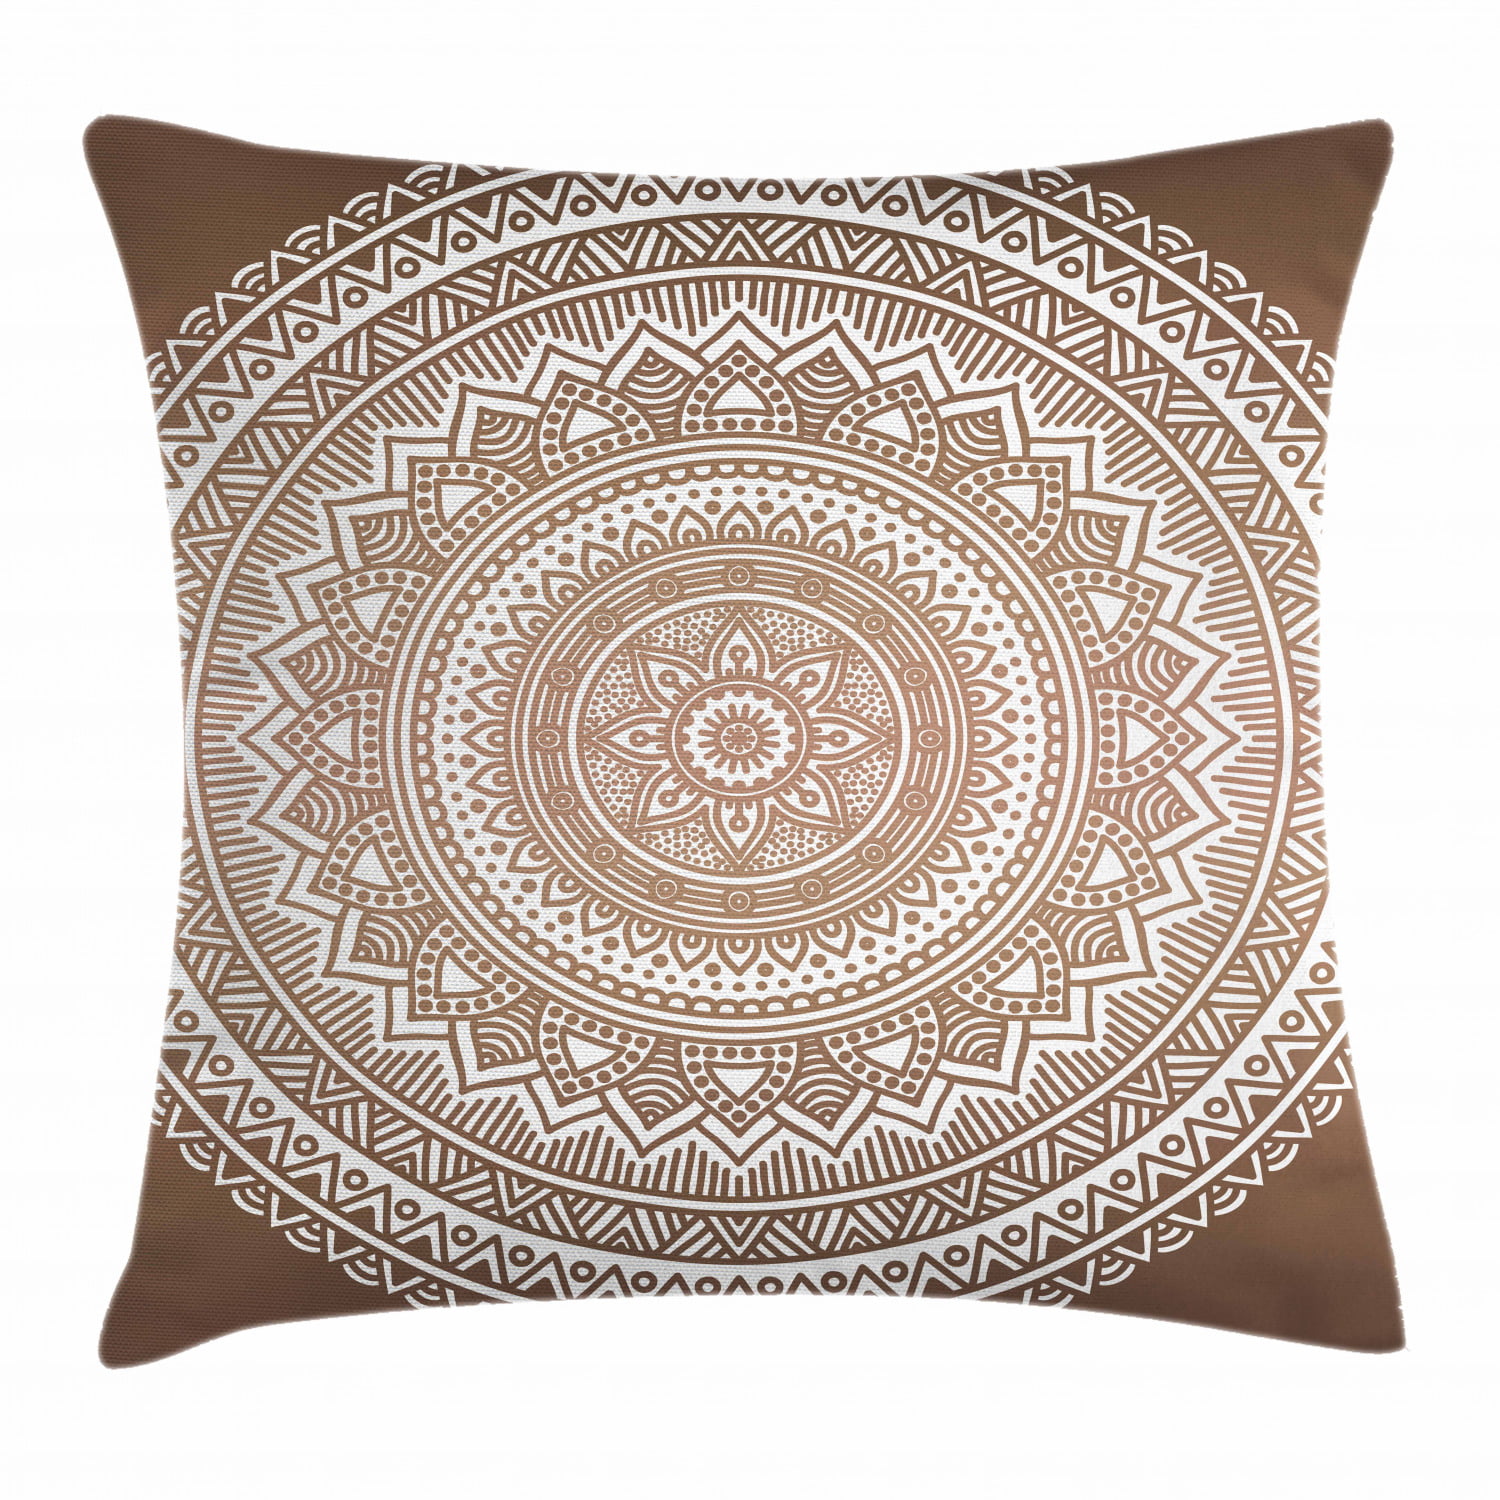 Indian Cotton Cushion Covers Ethnic Grey Mandala Sham Case Square Euro 